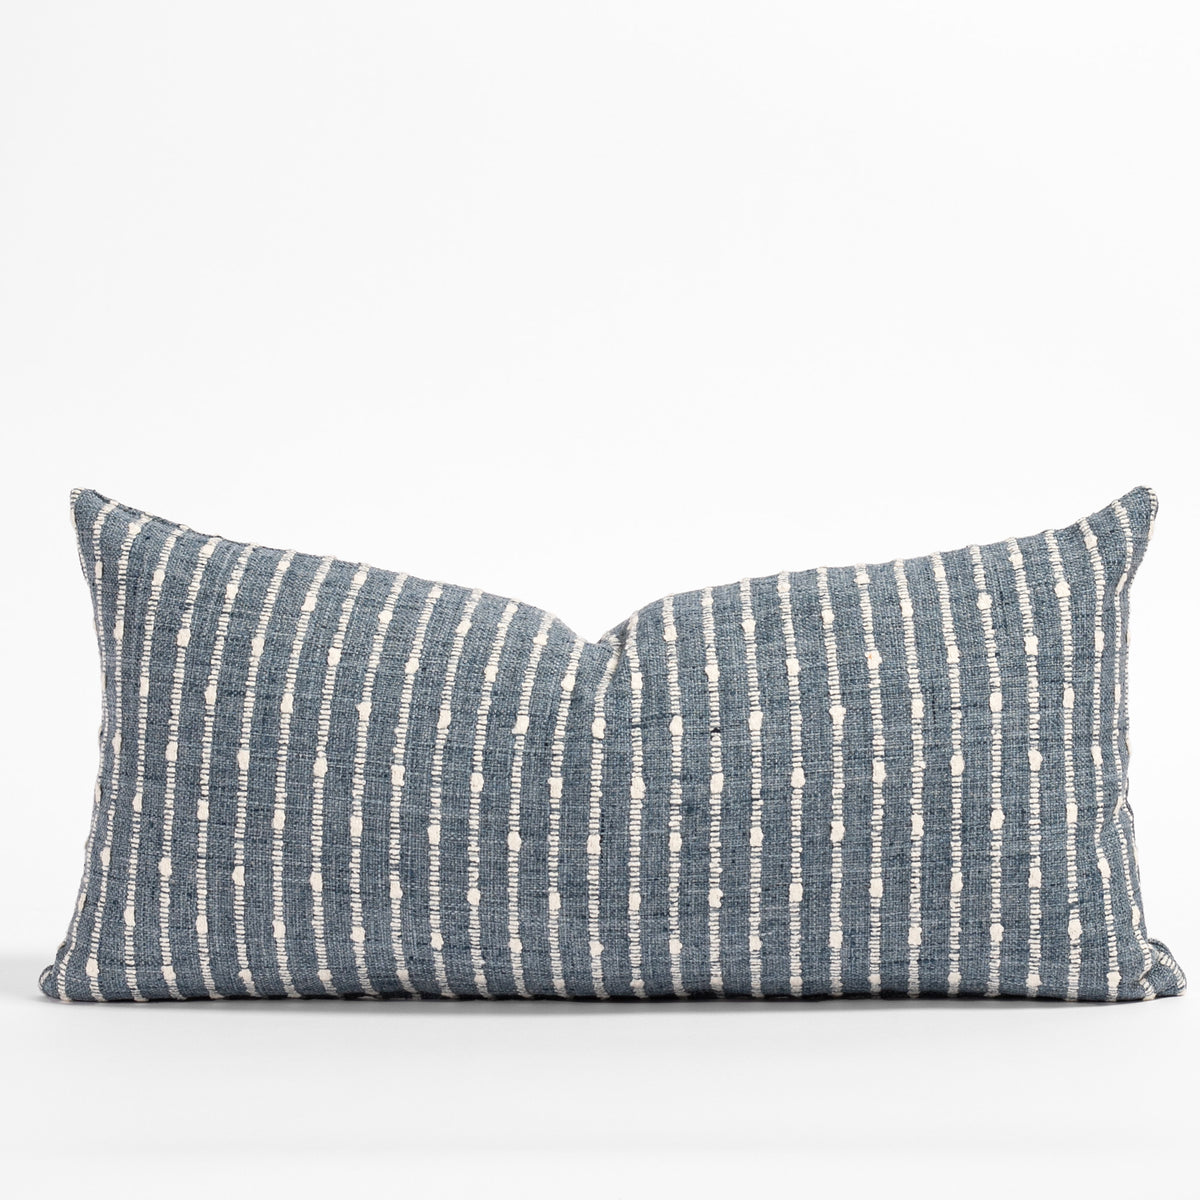 Harlow 22x22 Pillow, Desert Sand – Tonic Living